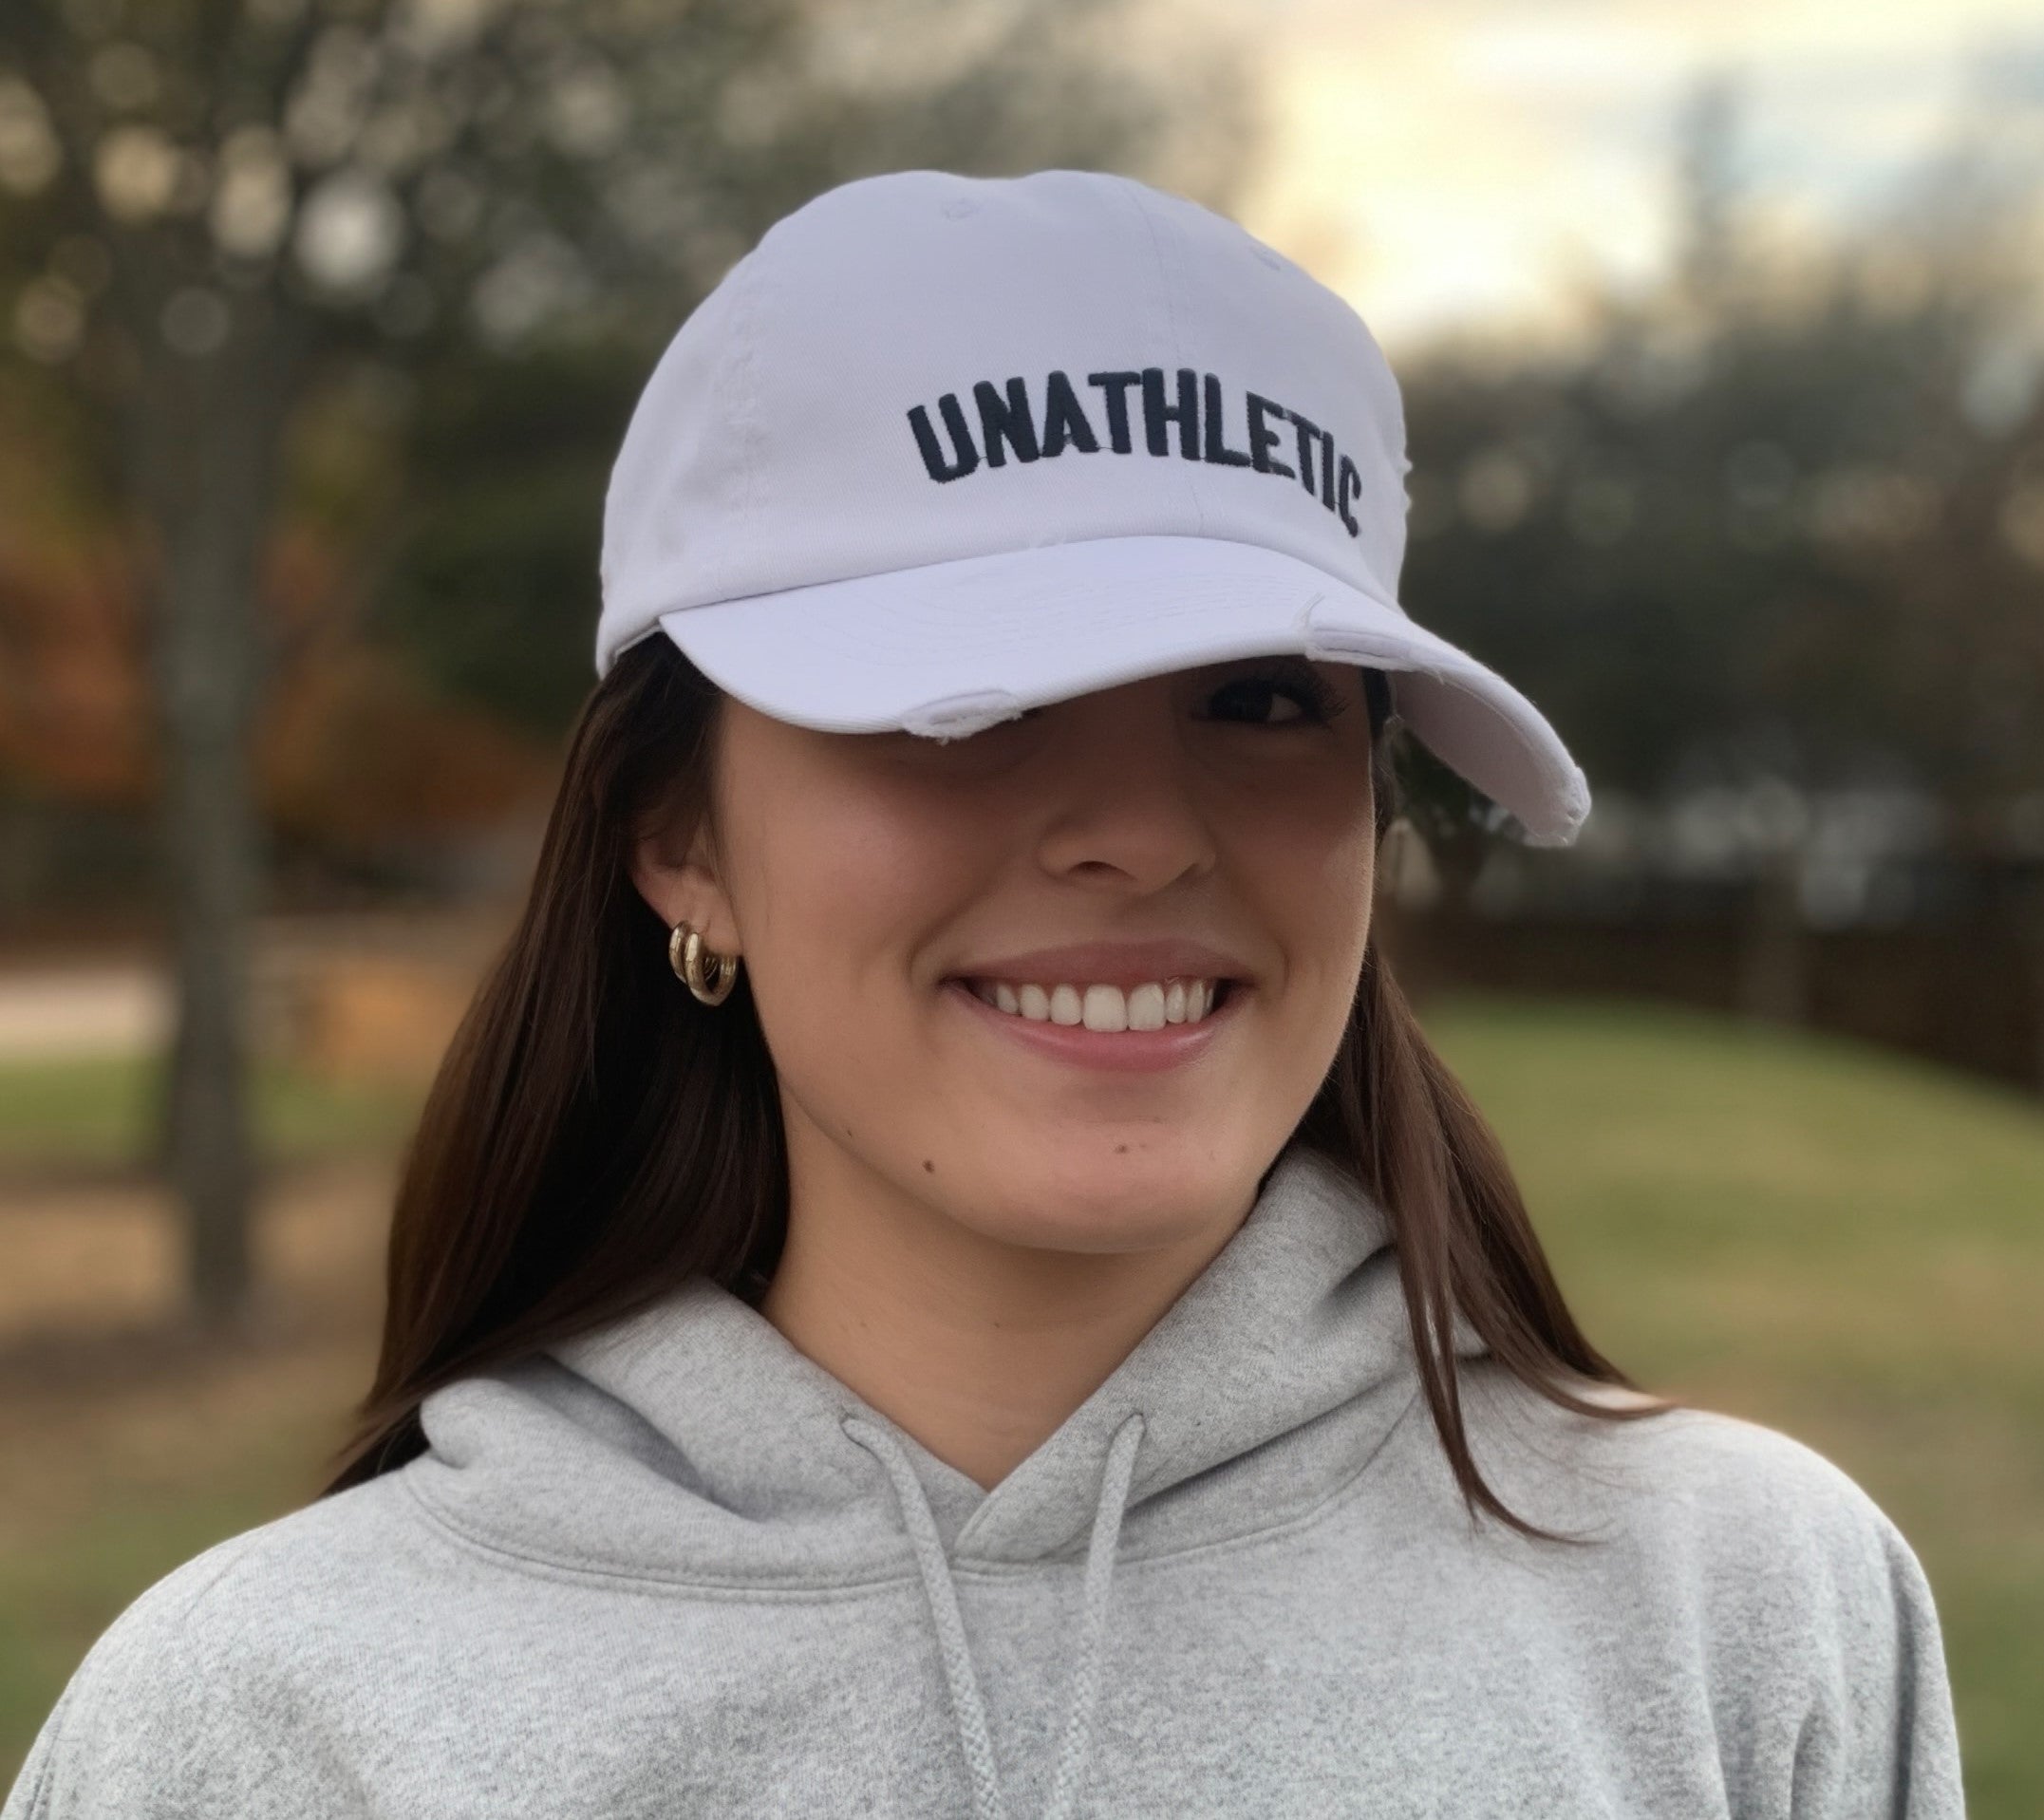 "Unathletic" Hat